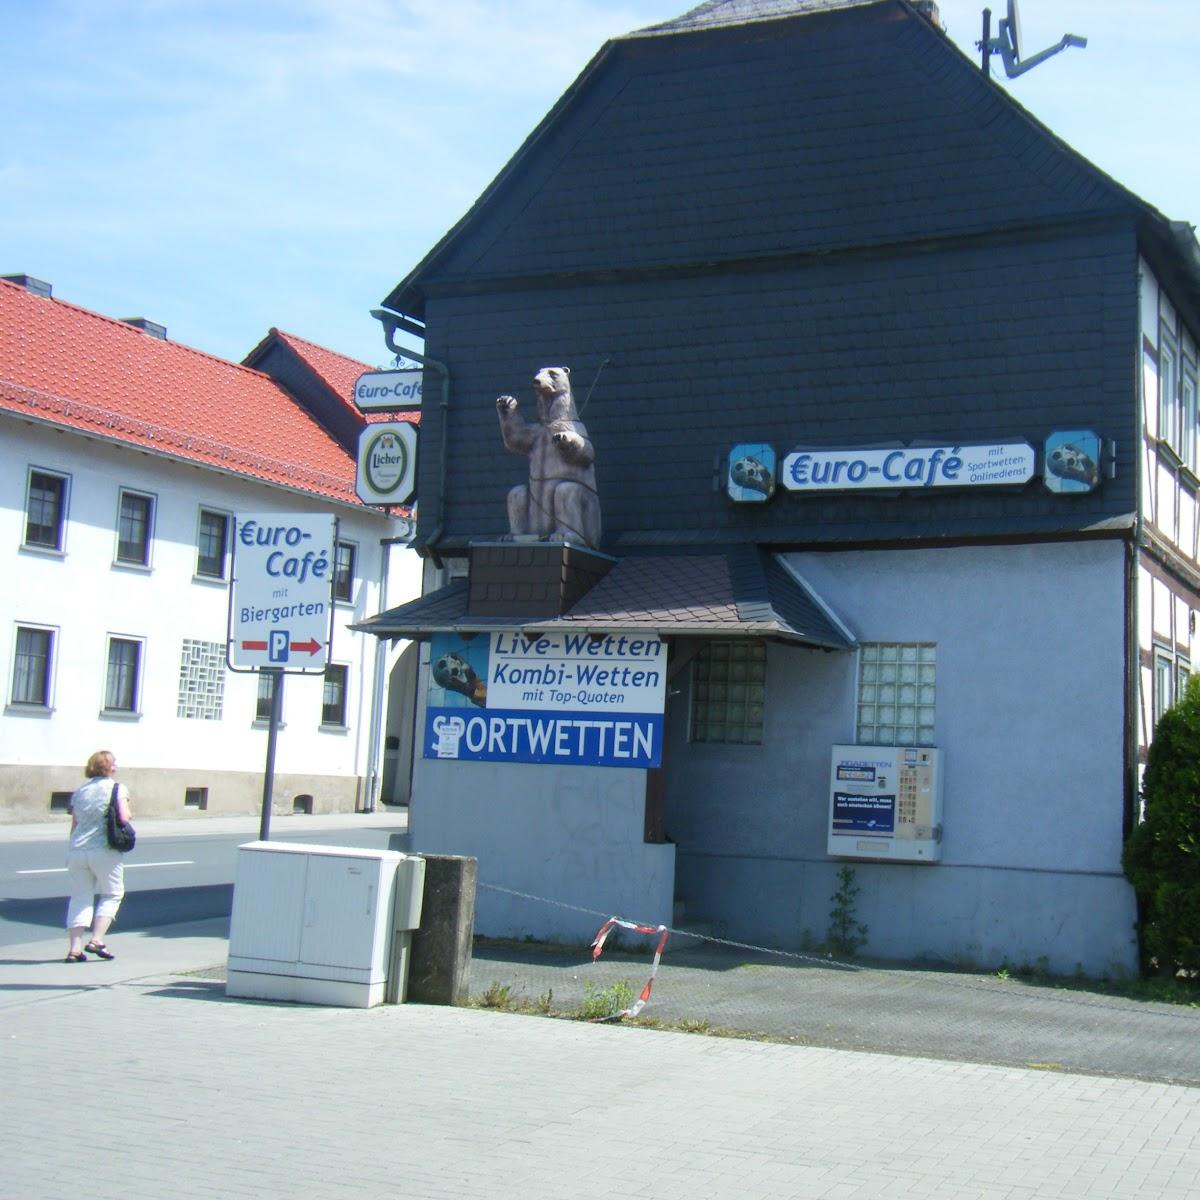 Restaurant "Euro-Café" in  Lahnau